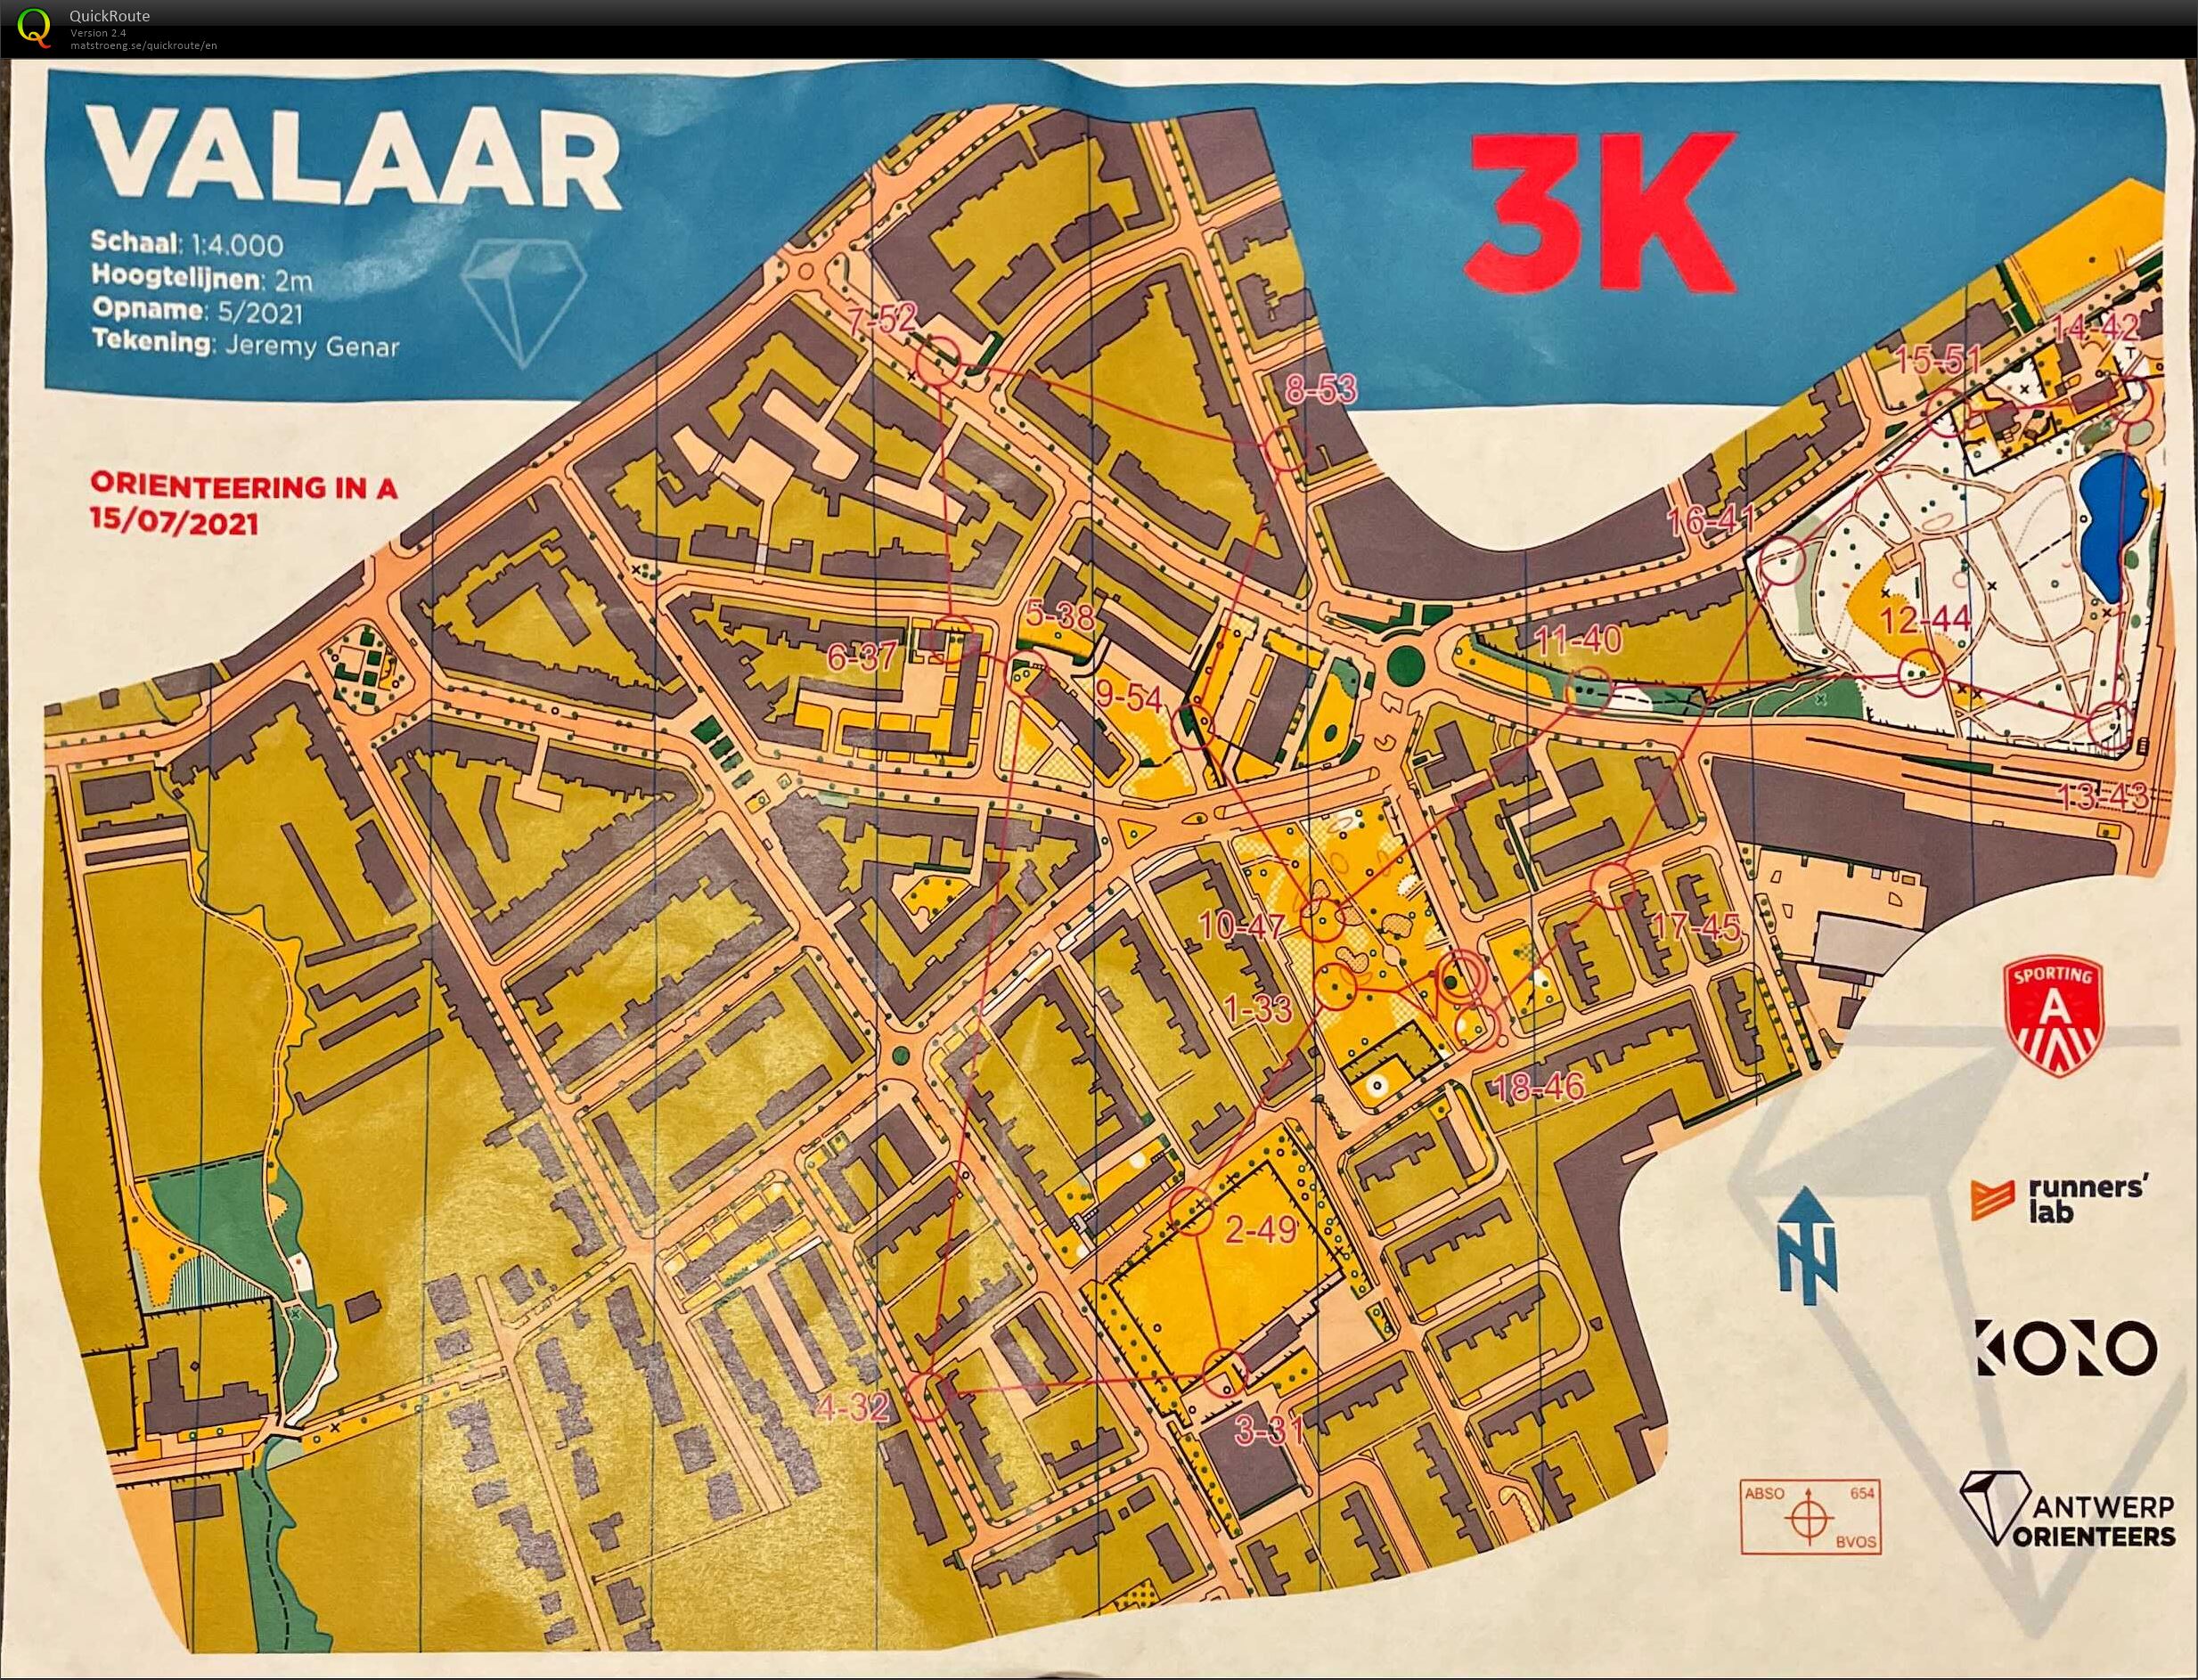 Orienteering in A - Wilrijk Valaar - 3K (15/07/2021)